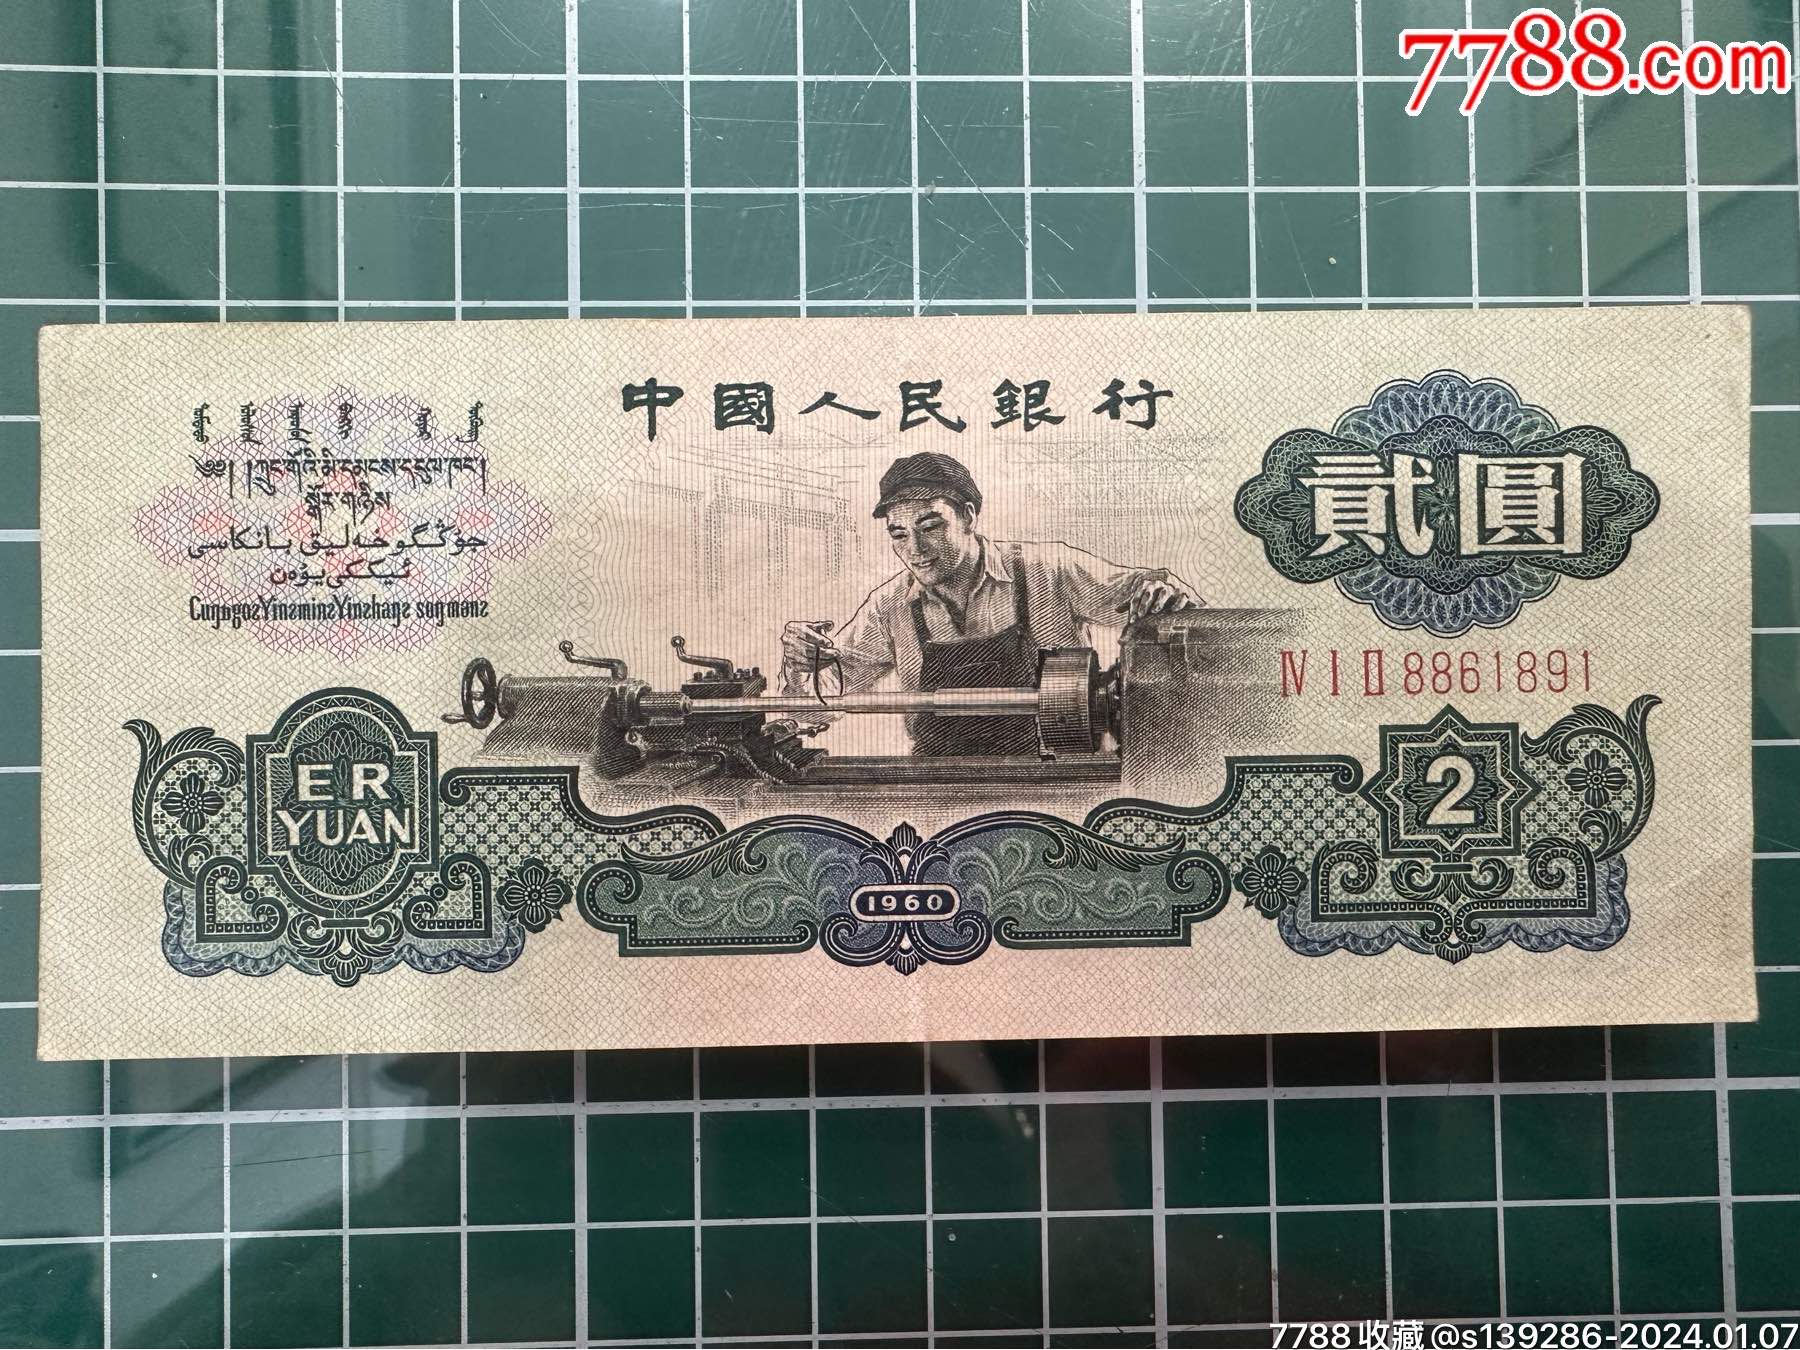 贰圆1980年人民币价格图片